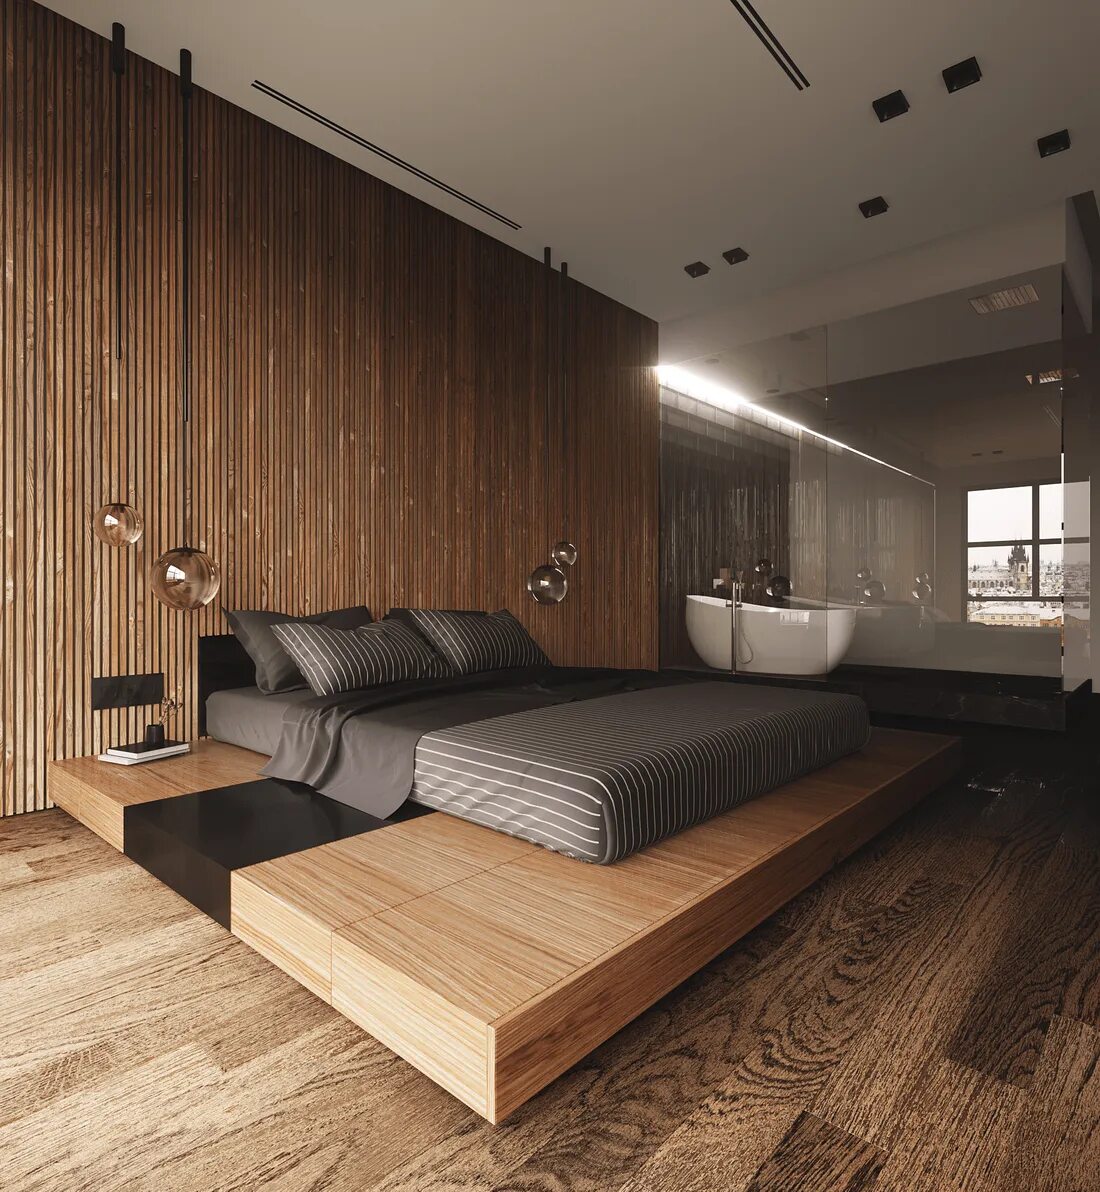 Спальня в современном стиле с деревом. Спальня с деревянными рейками. Дерево в современном интерьере. Деревянные рейки в интерьере.